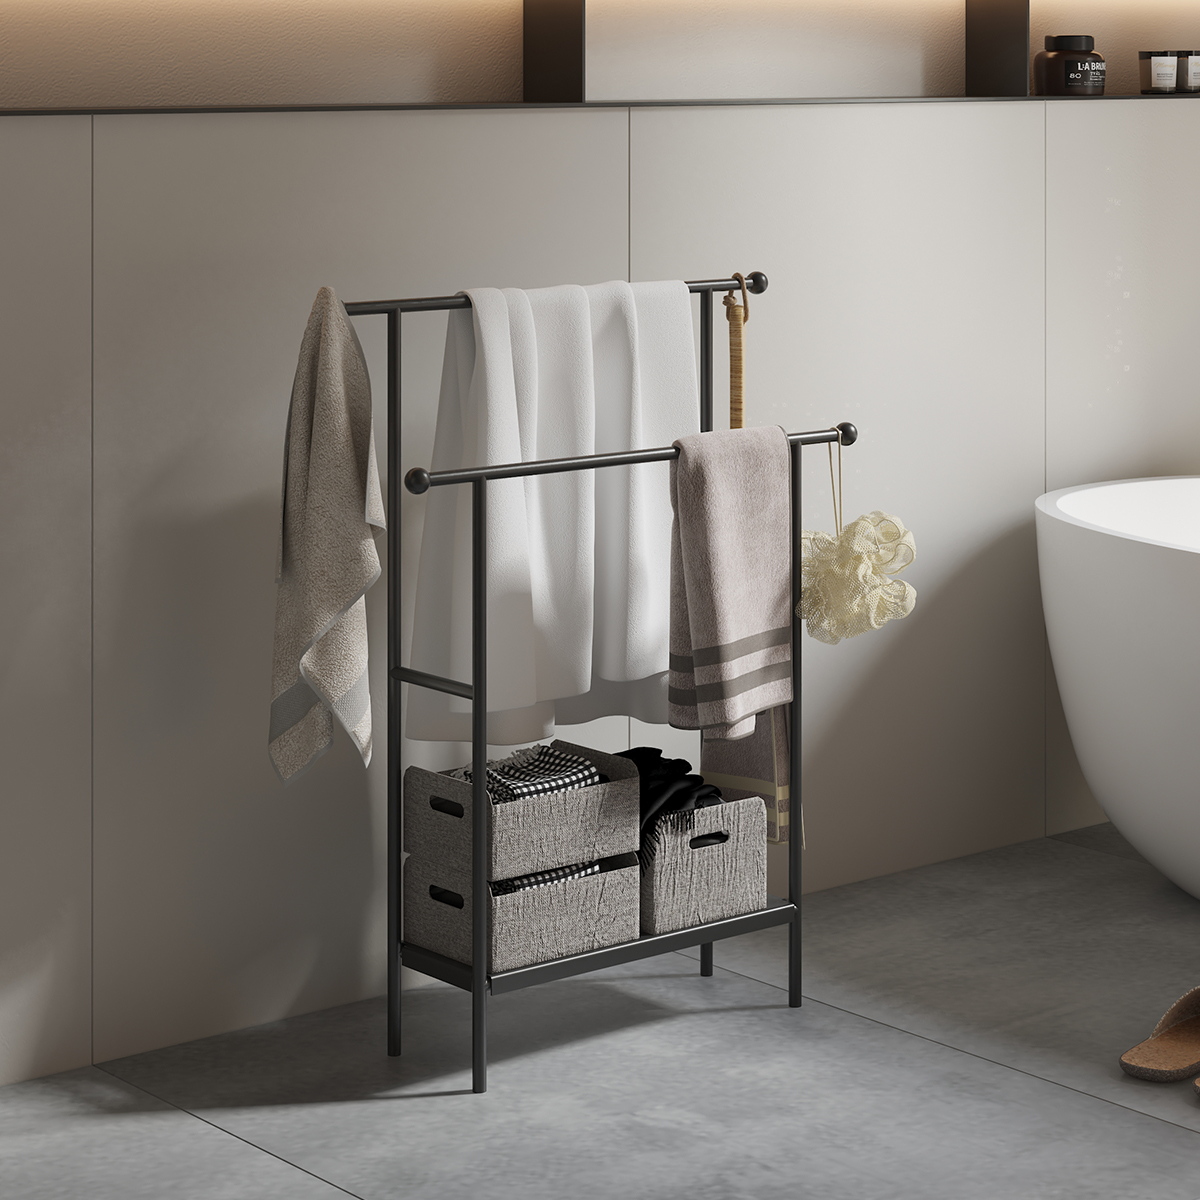 北欧风家用卫生间落地式浴缸边毛巾架浴巾架可移动多功能置物架子